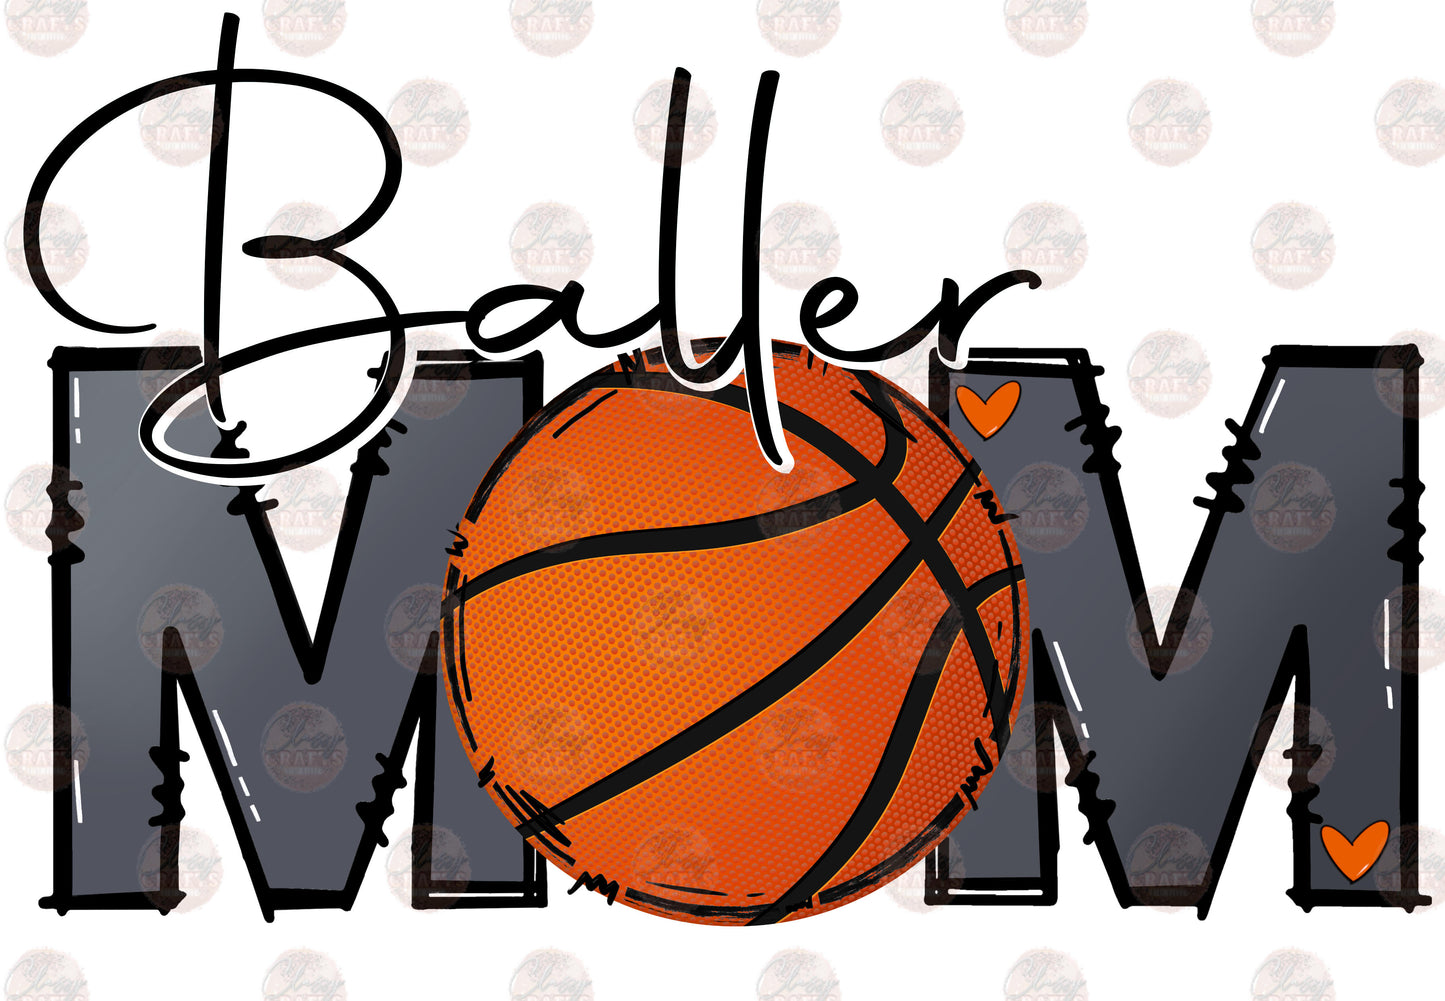 Baller Mom Basketball Transfer